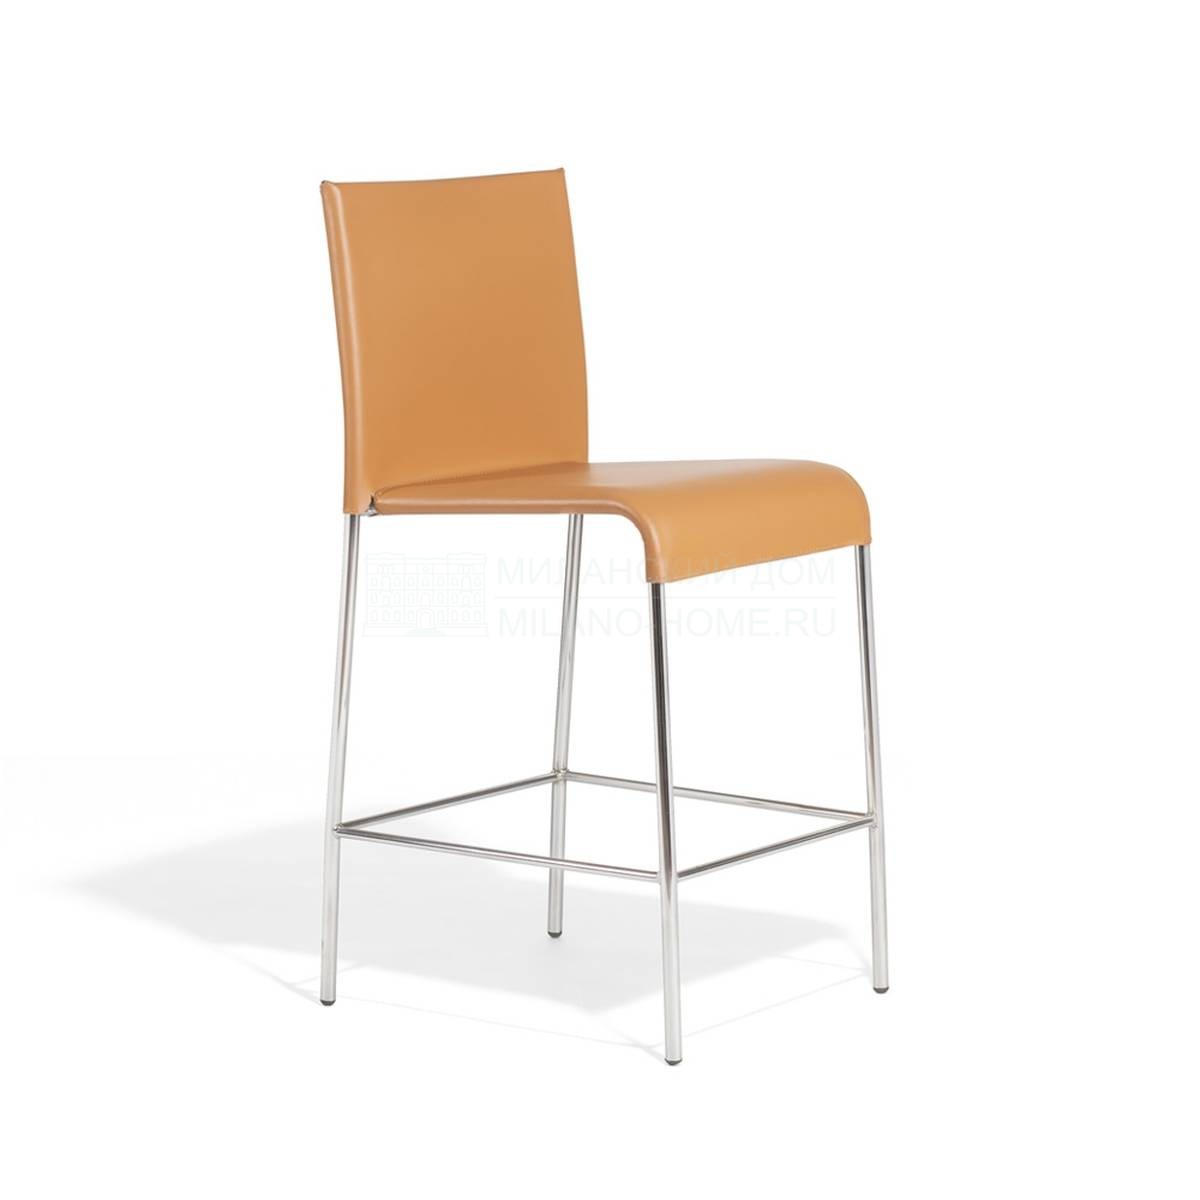 Барный стул Agra/688/AC из Италии фабрики POTOCCO